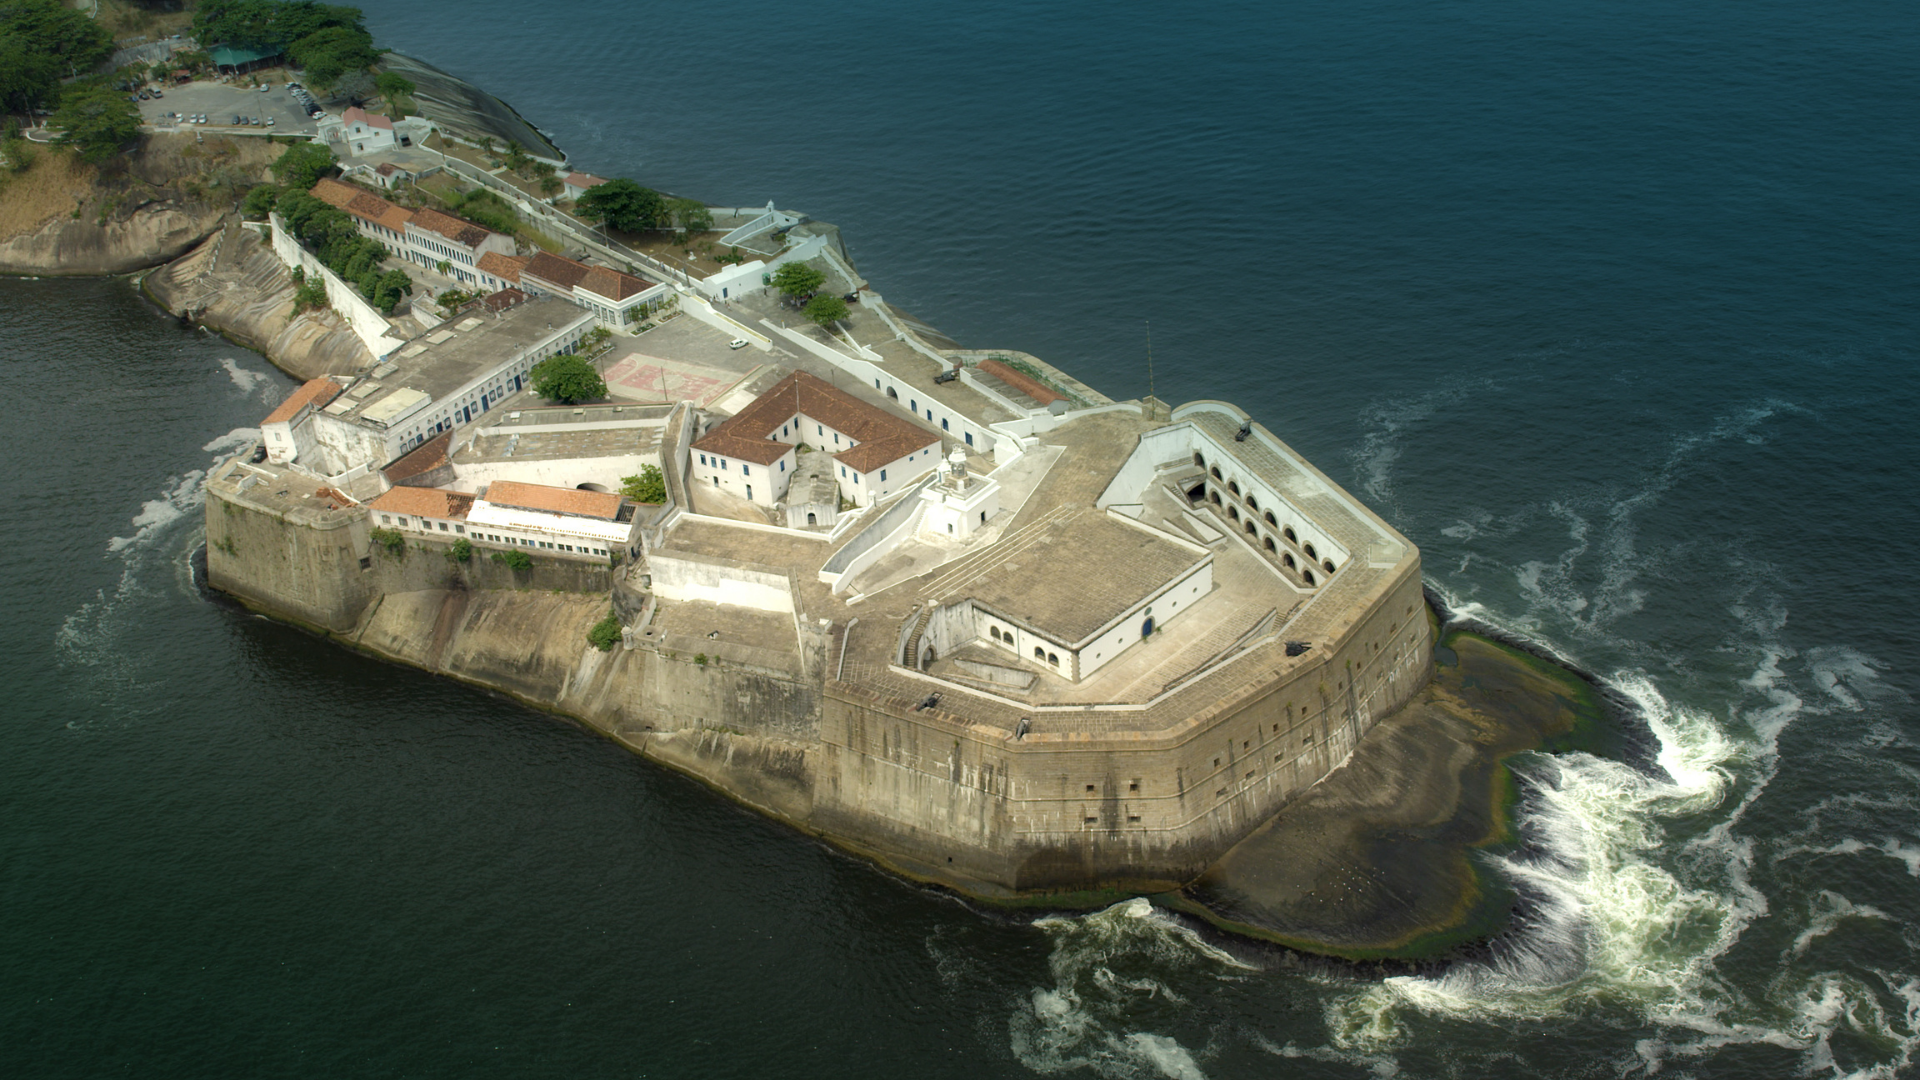 Visite a Fortaleza de Santa Cruz em Niterói